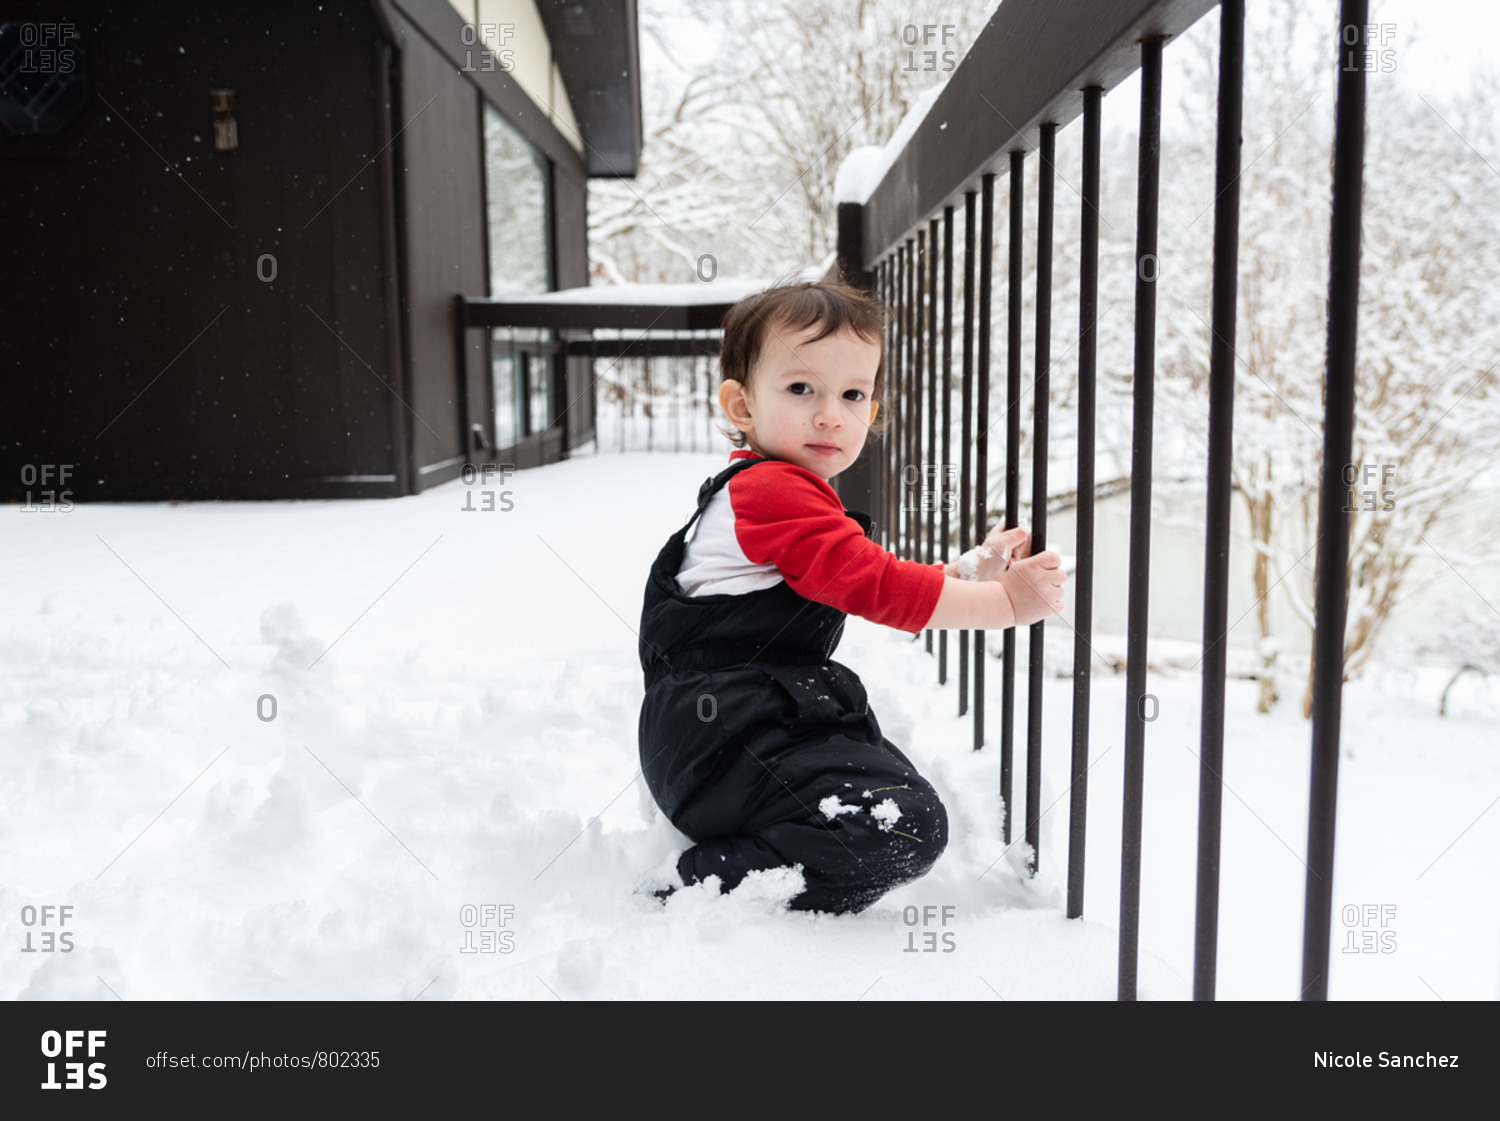 Toddler boy on a snowy deck